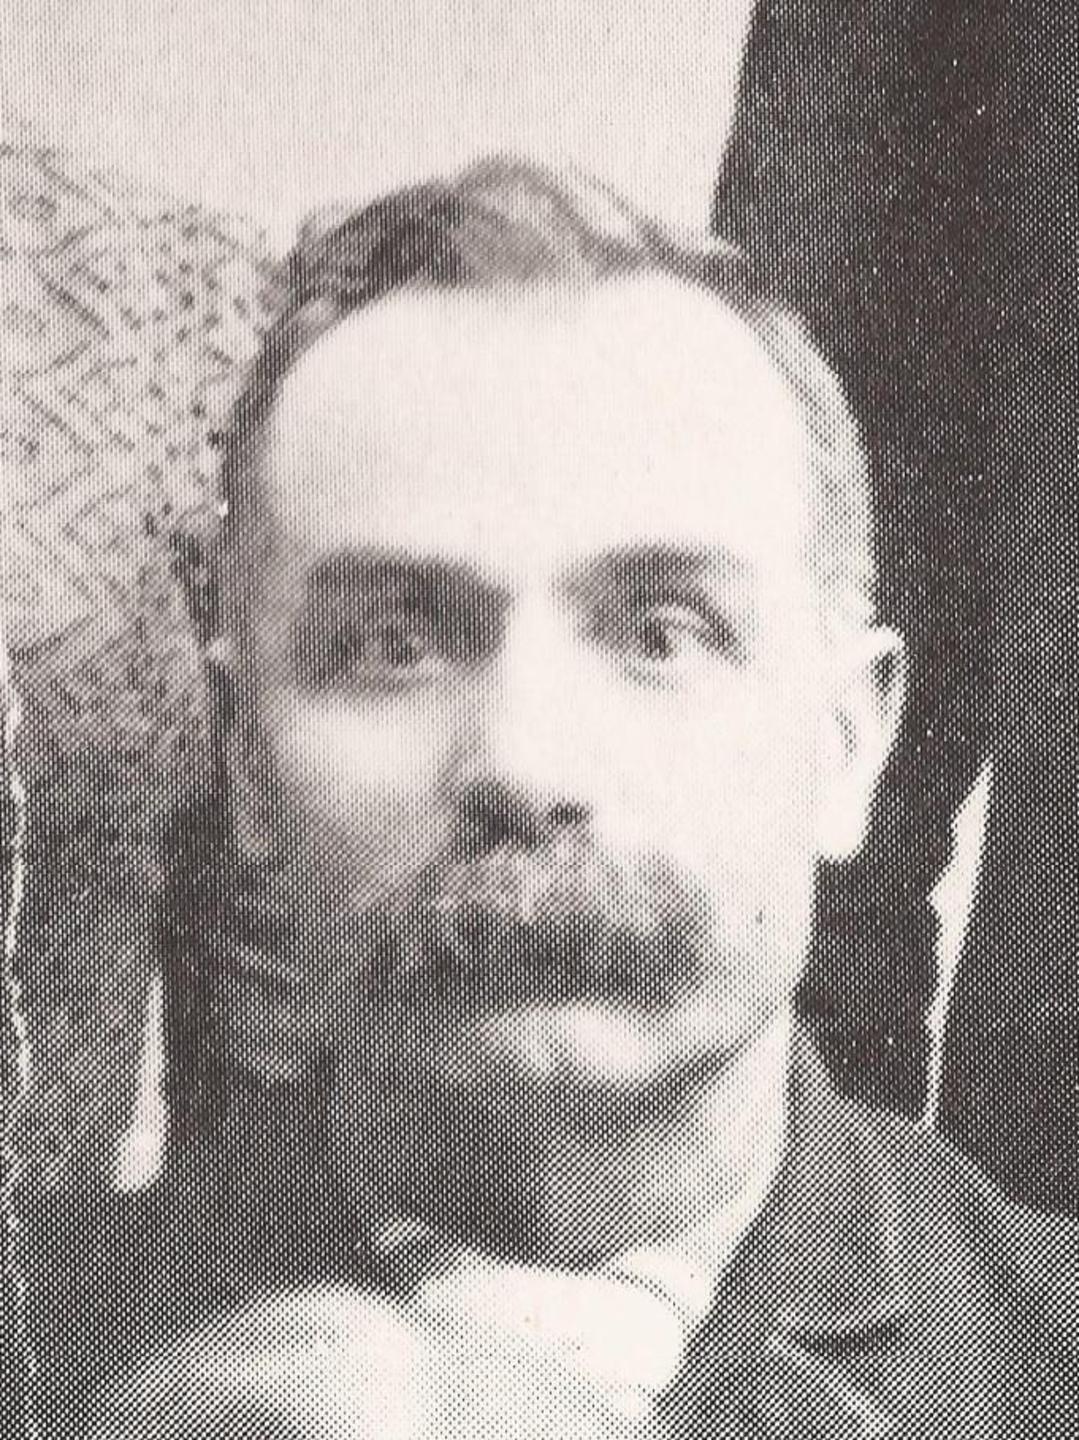 David Morgan Reese (1845 - 1940) Profile